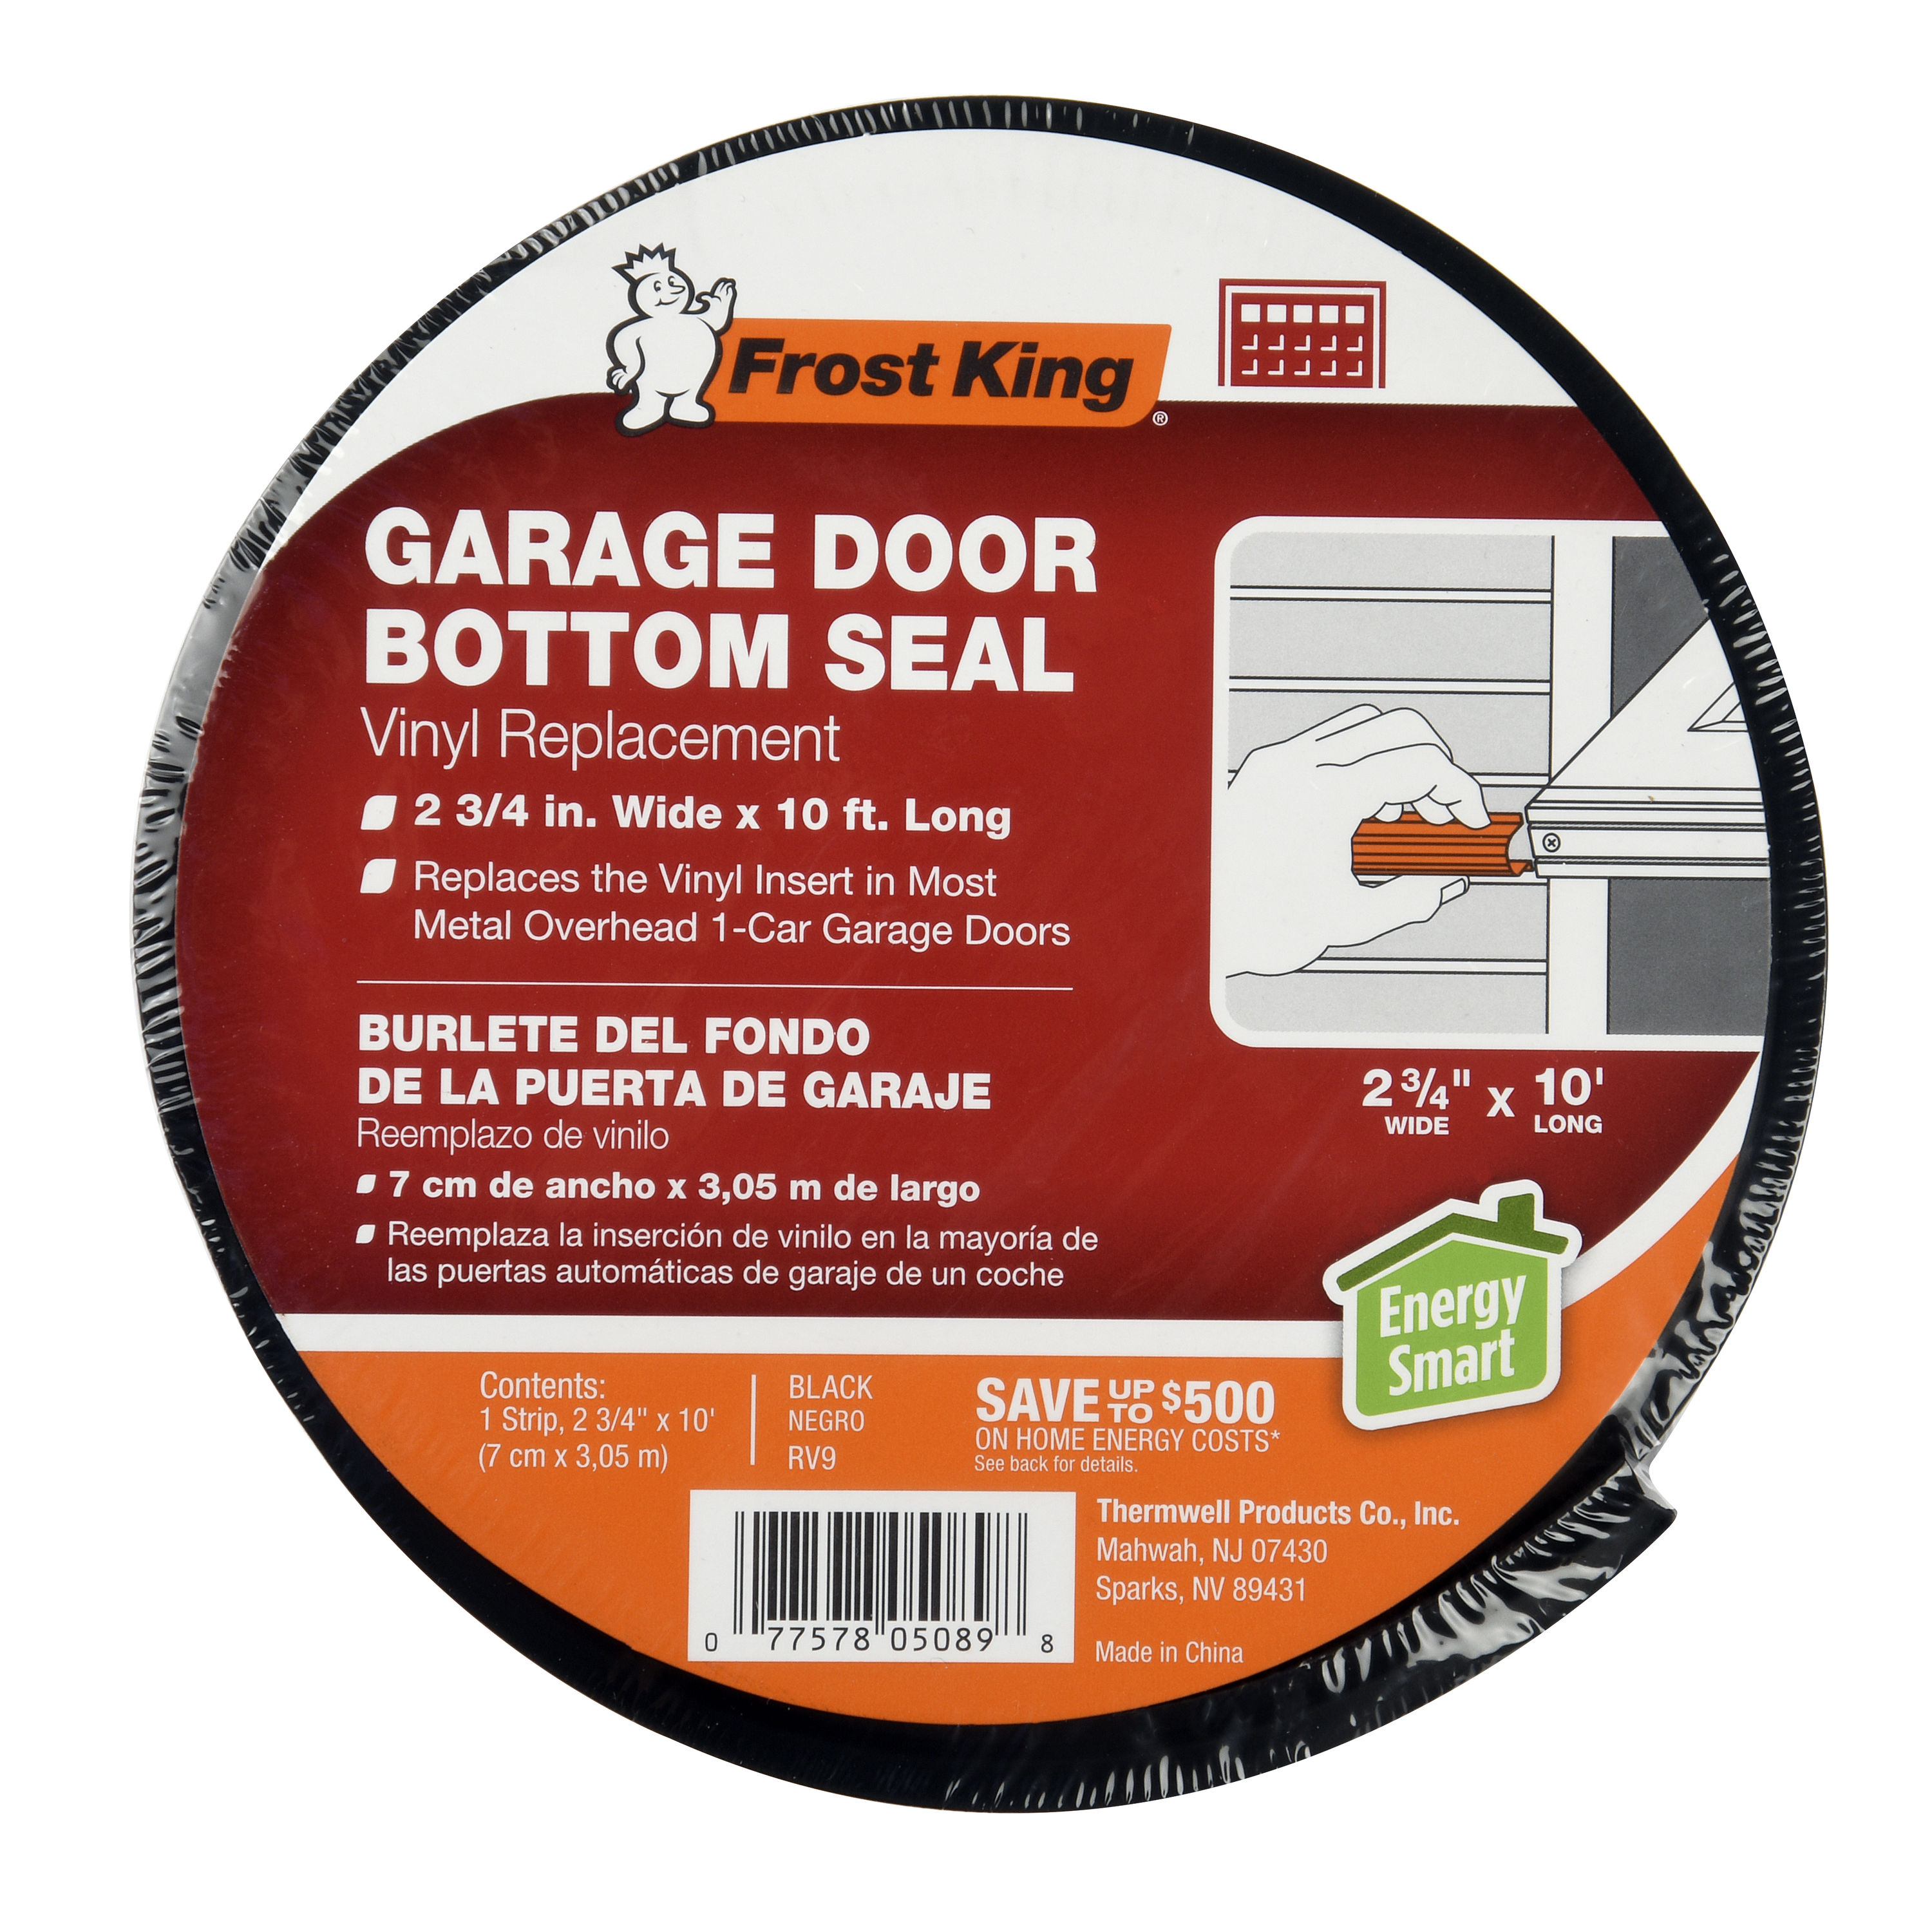 Burlete Puerta Garaje Genie Garage Door Bottom Seal Gasket Lowes